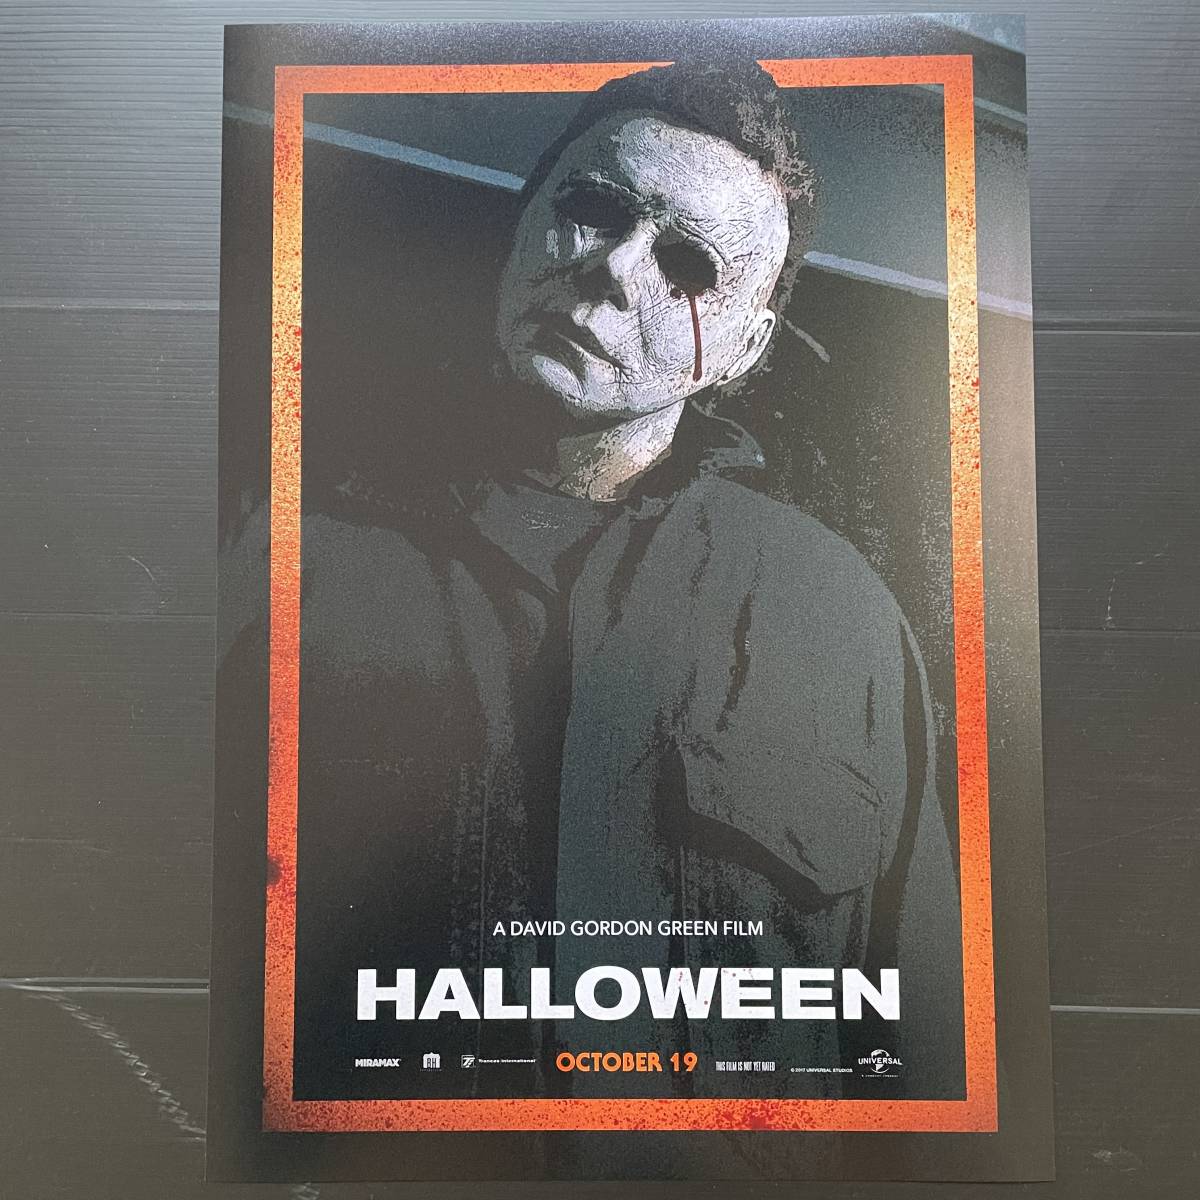  иностранная версия постер [ Halloween ](Halloween)2018 год версия #2* John * ковровое покрытие nta-/ boogie man / Michael *ma year z